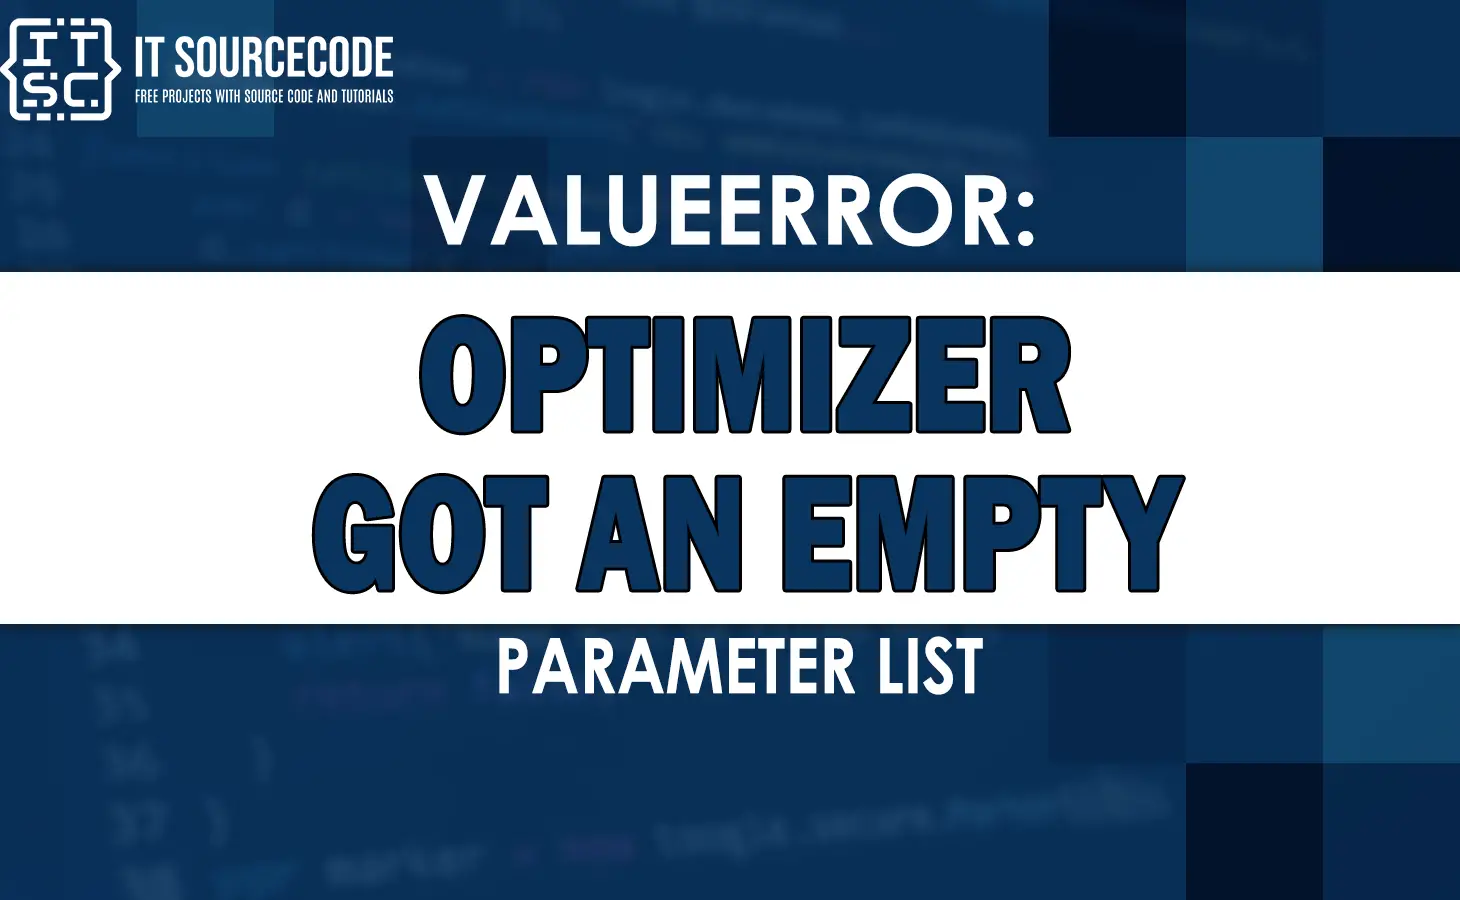 Valueerror optimizer got an empty parameter list